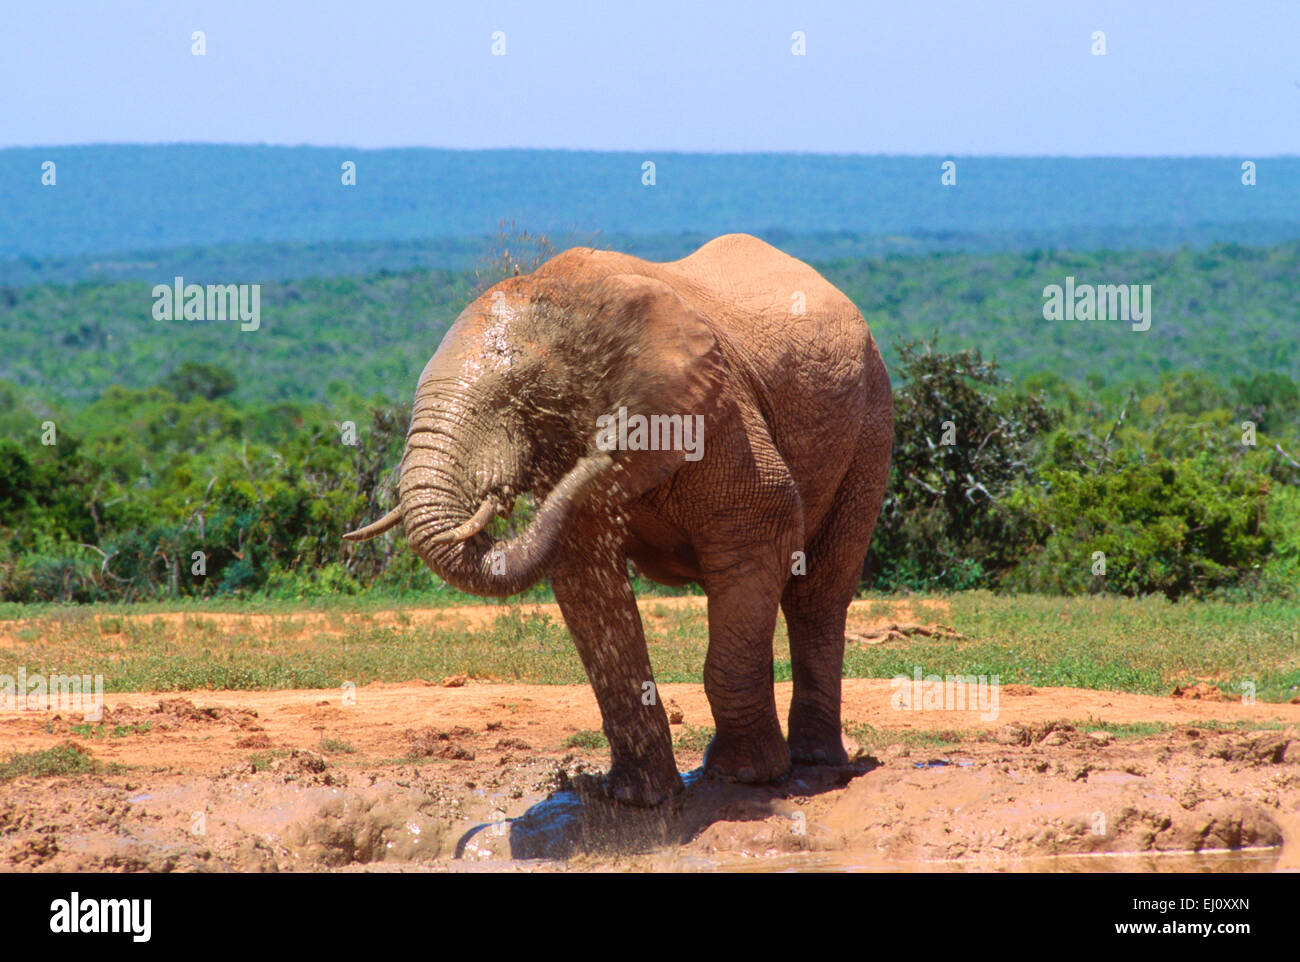 African Elephant, Loxodonta africana, Elephantidae, Elephant, water whole, bathing, mammal, animal, Addo Elephant, National Park, Stock Photo